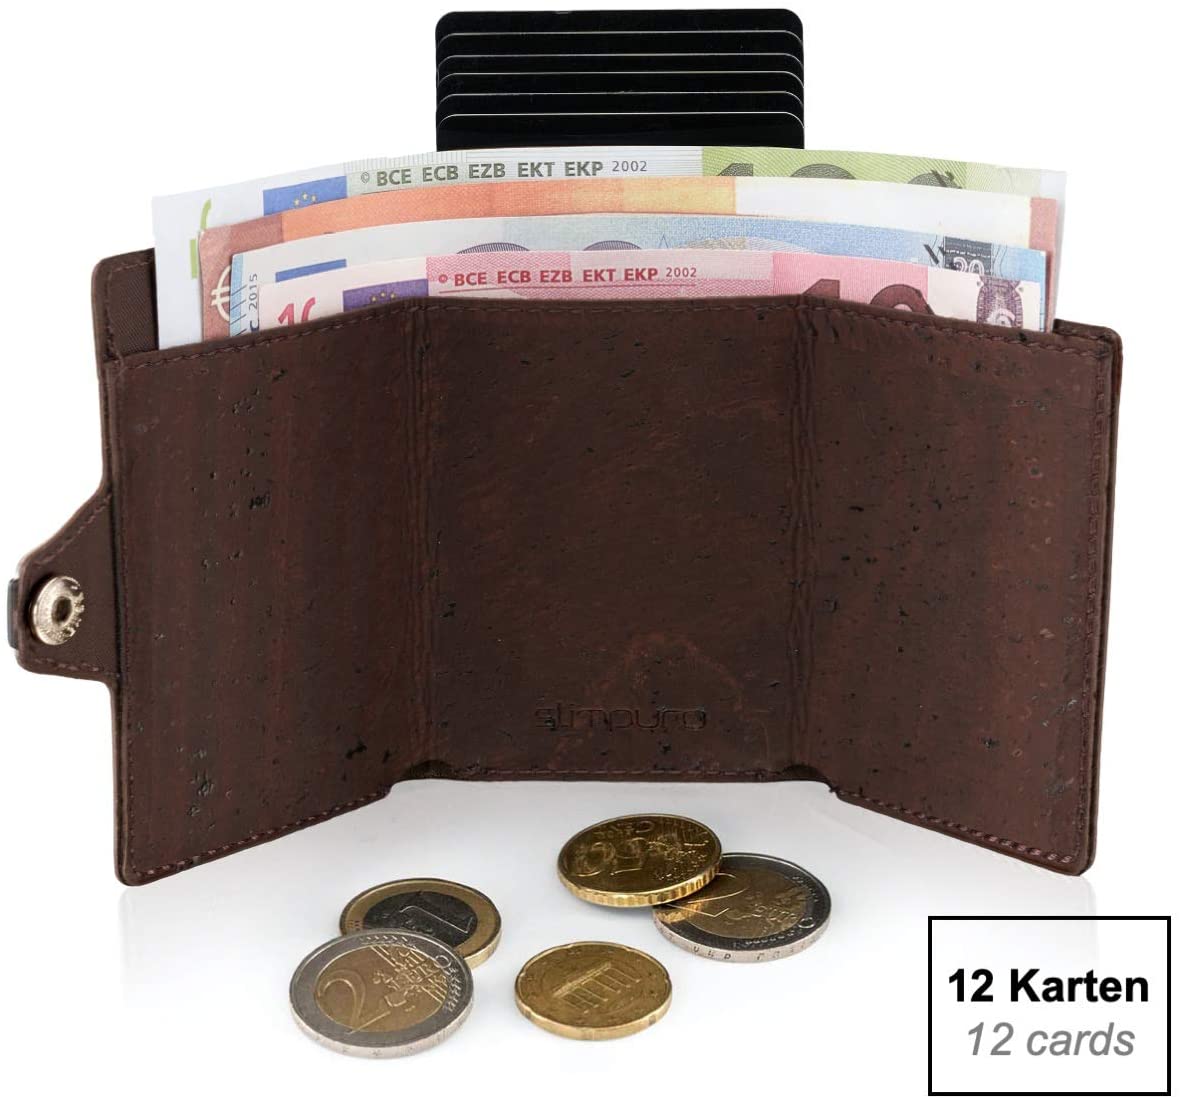 ZNAP Kreditkartenetui mit Geldklammer Aluminium und Münzfach - RFID Schutz - Slim Wallet - mehrere Farben - bis 12 Karten - Geld Clip von SLIMPURO